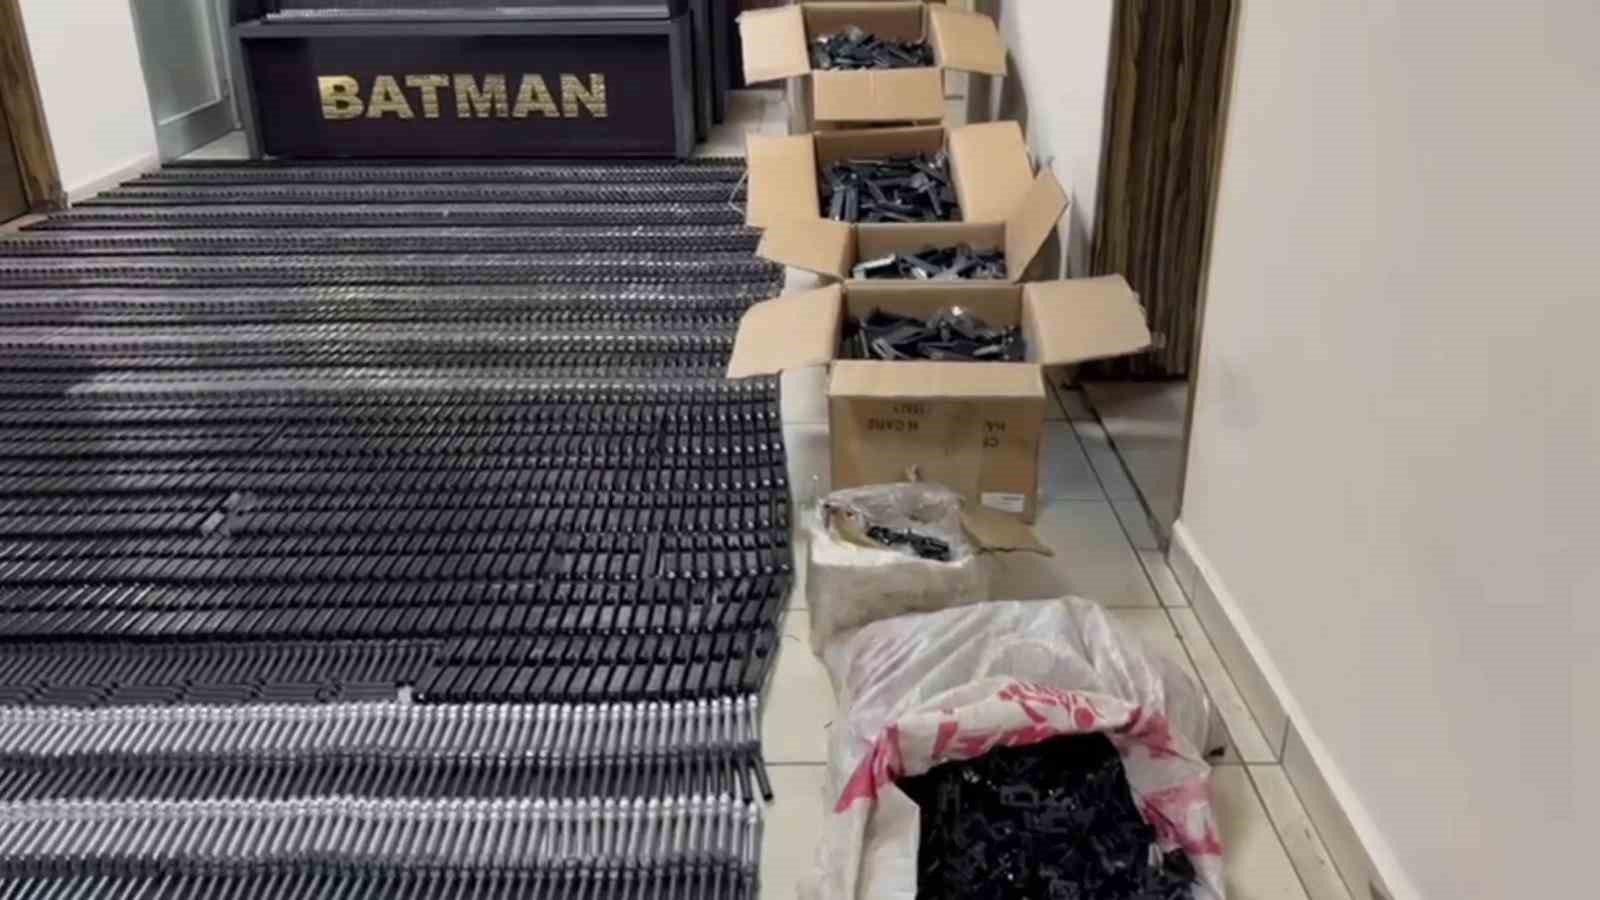 Batman’da duvar içindeki özel bölmede binlerce silah malzemesi ele geçirildi
